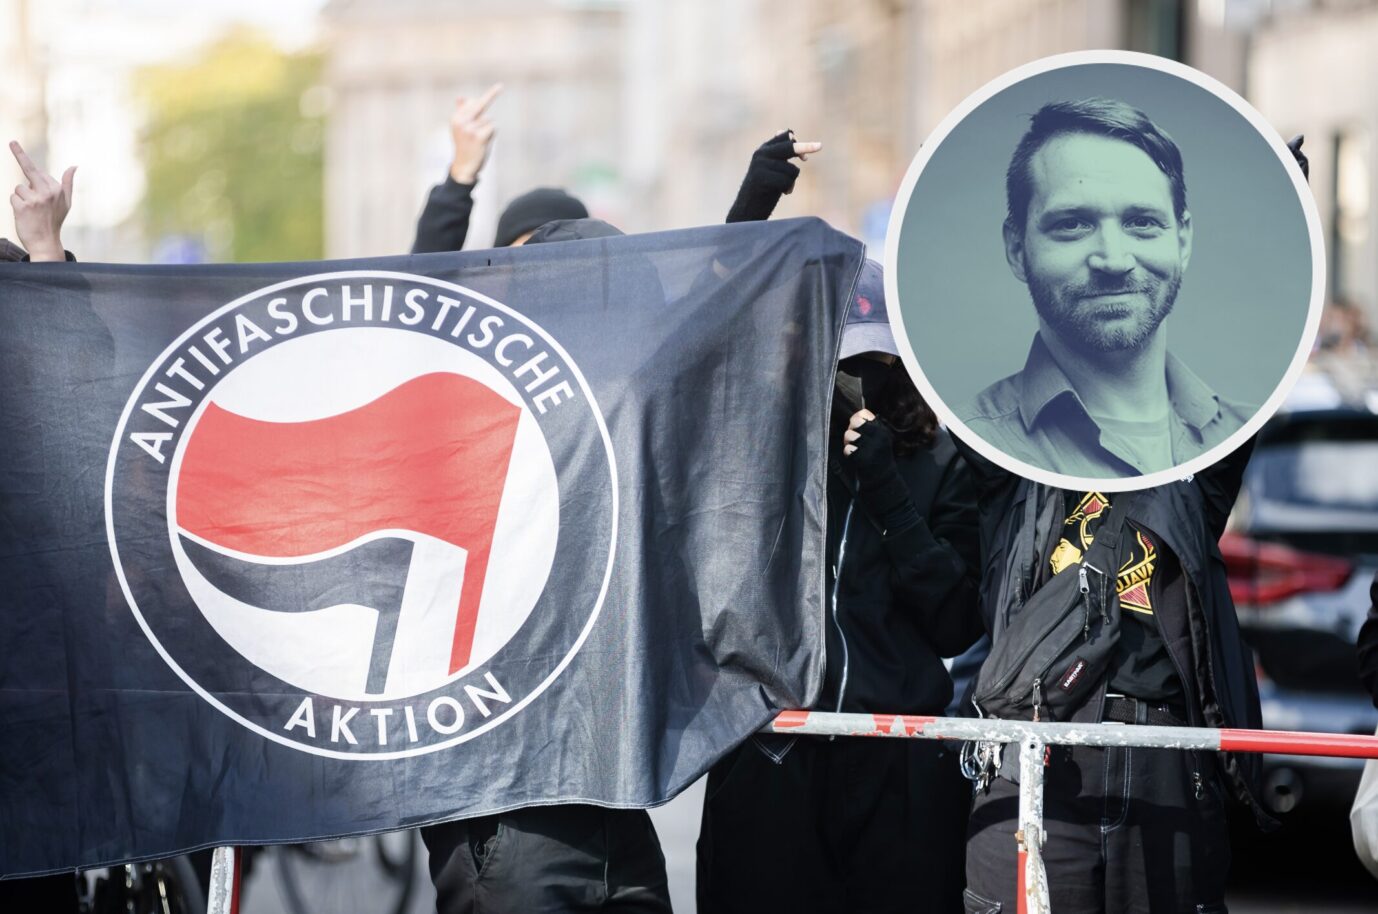 Linksextremisten demonstrieren in Berlin. Manchmal greifen sie auch KAmeraleute und andere Journalisten an